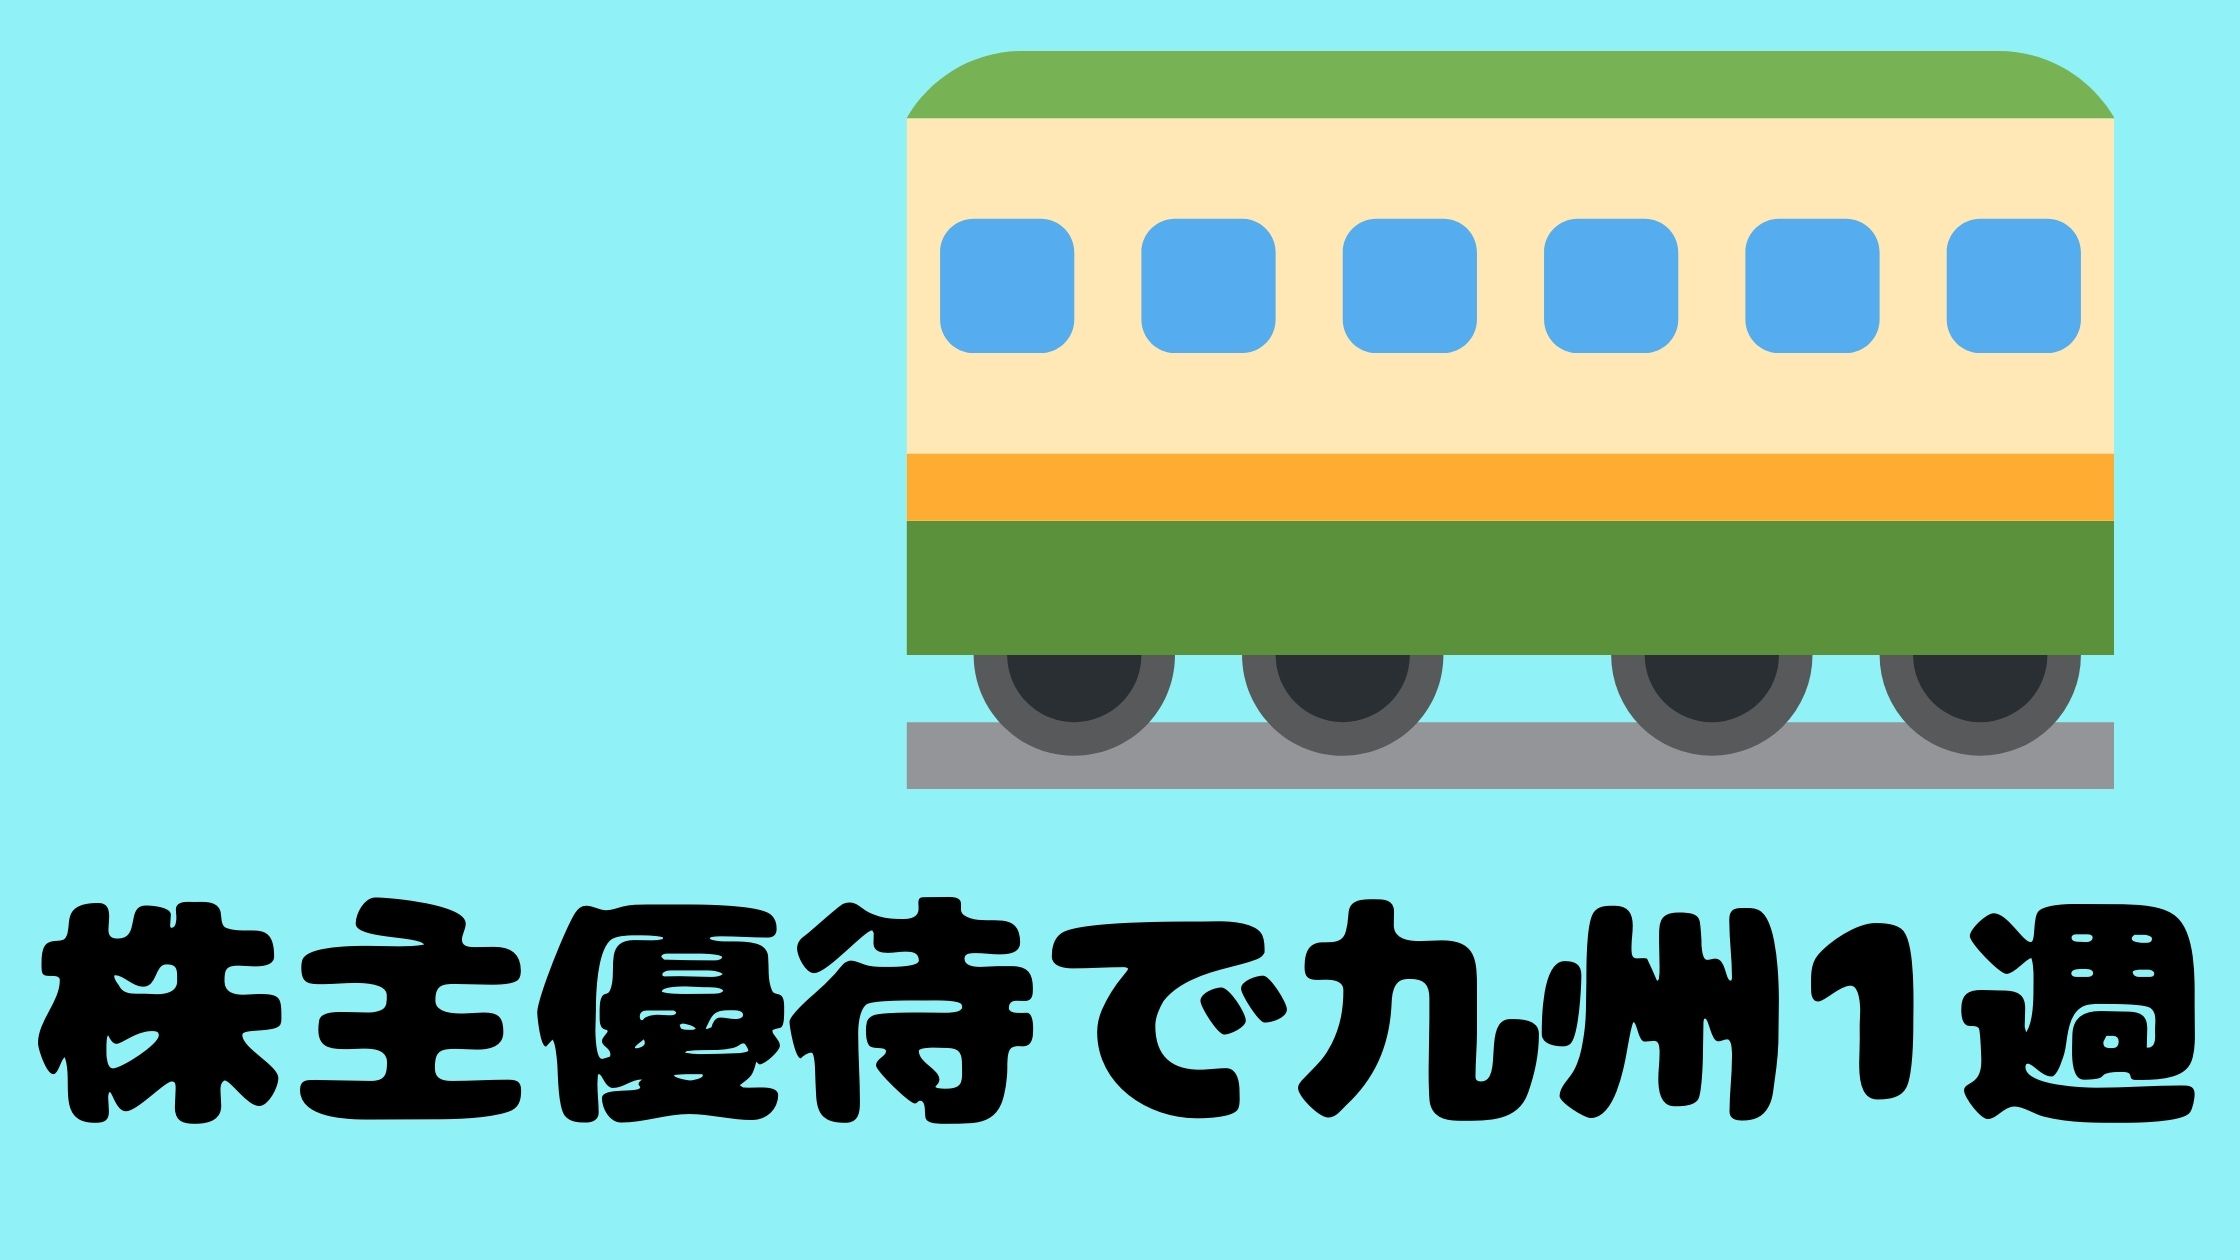 JR九州の株主優待券を使って九州1周する方法 | ウズラブログ